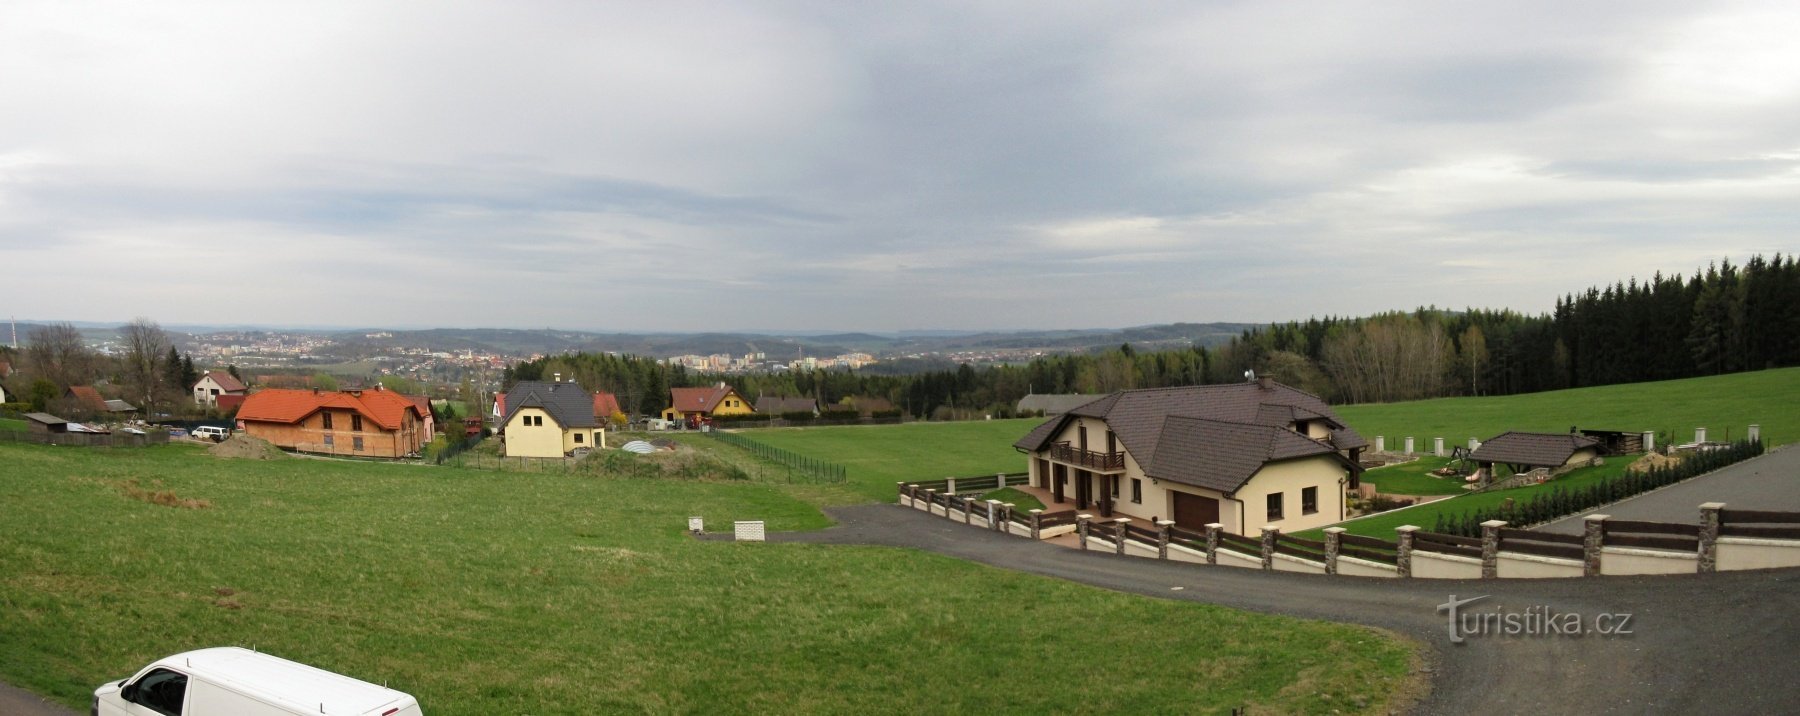 Orlov kilátó Příbram közelében (653 m tengerszint feletti magasságban)